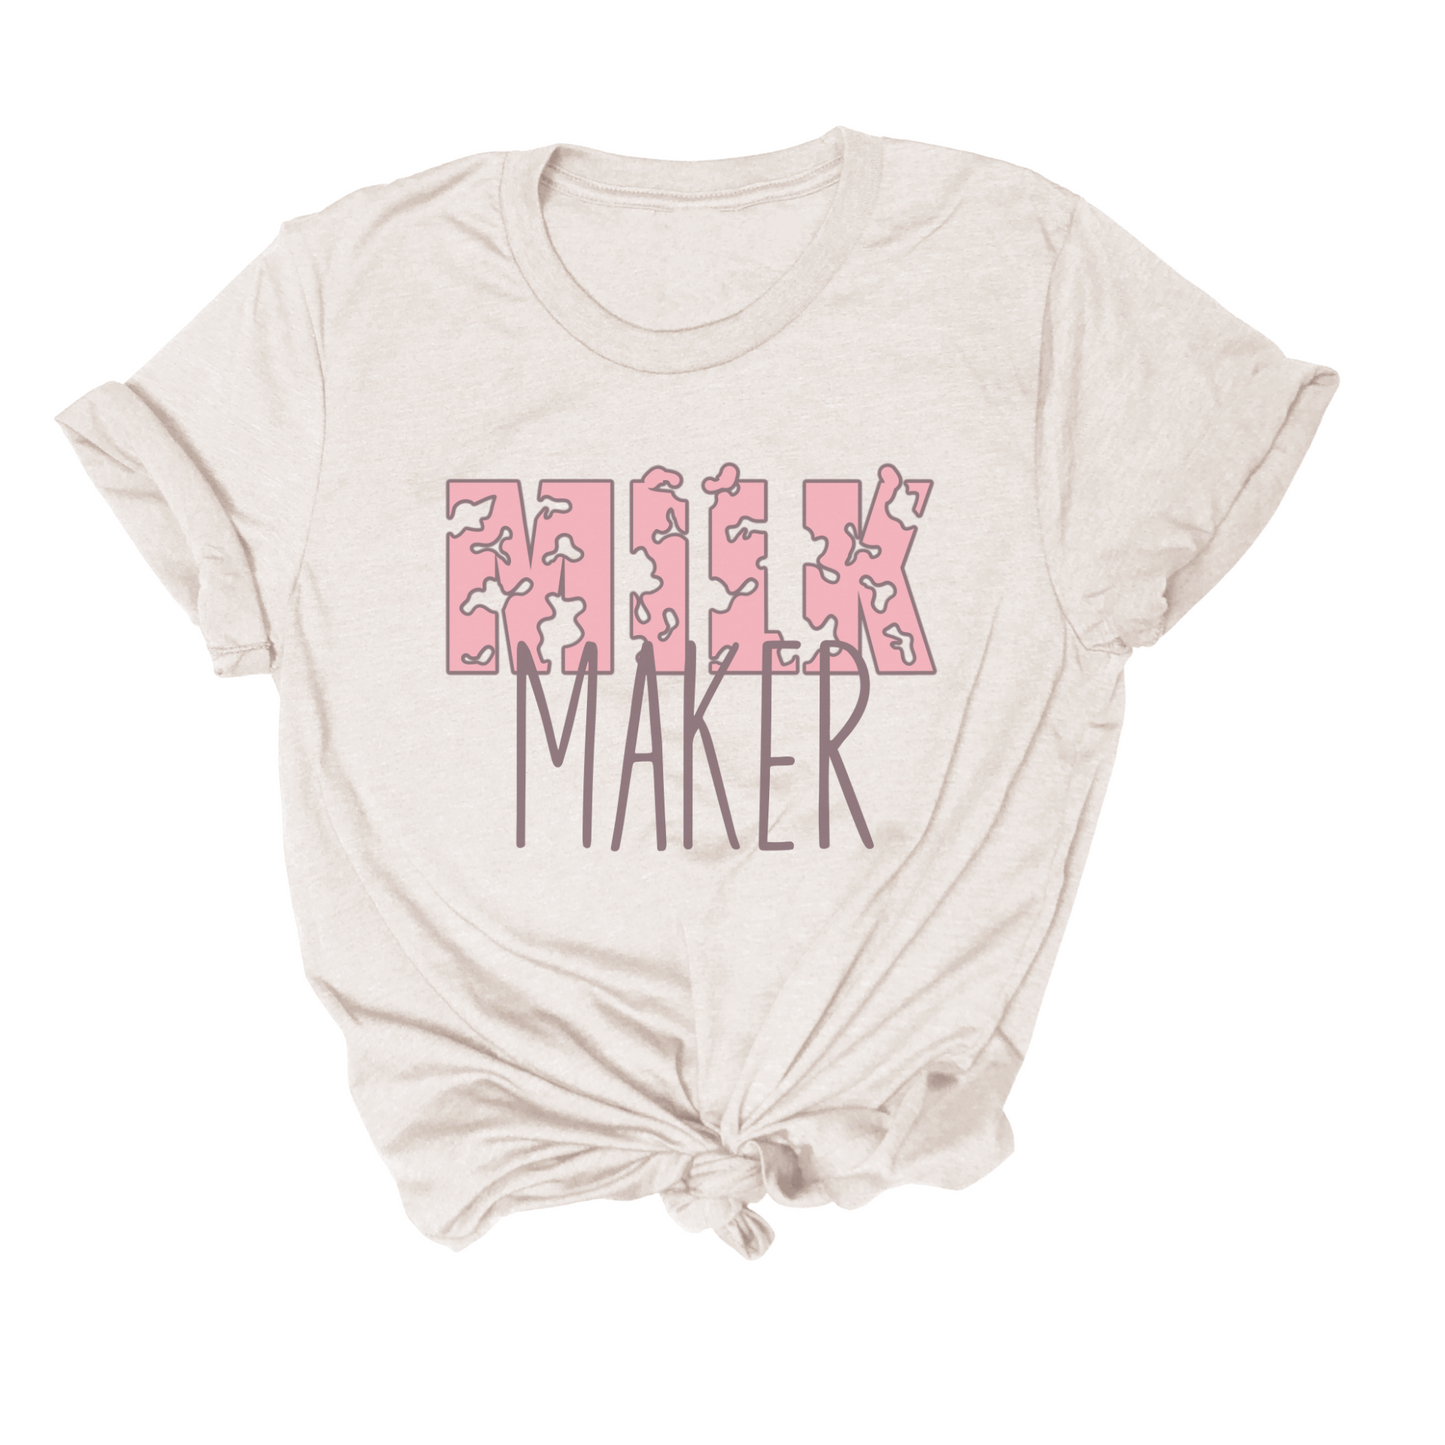 Milk Maker Tee